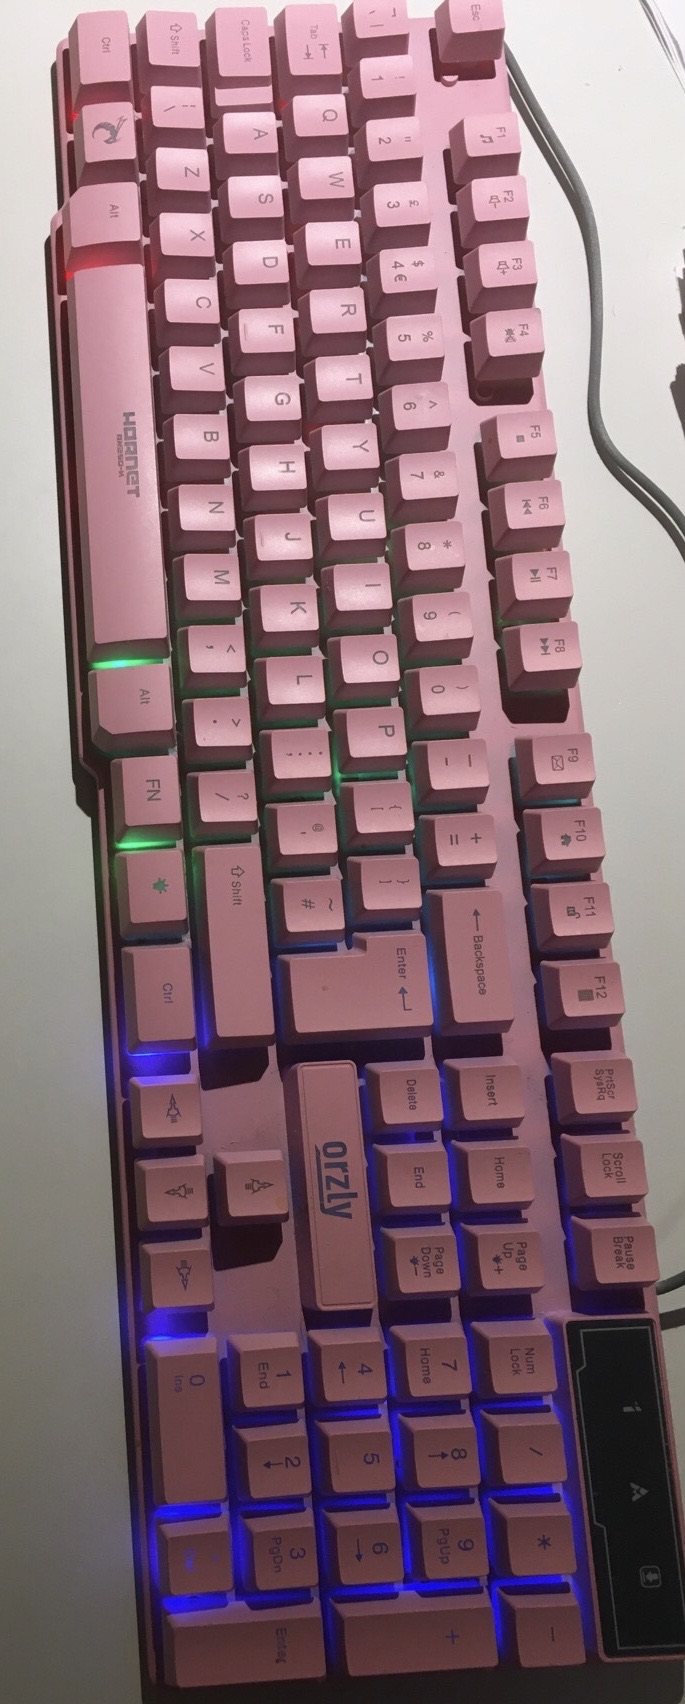 鼠标 键盘